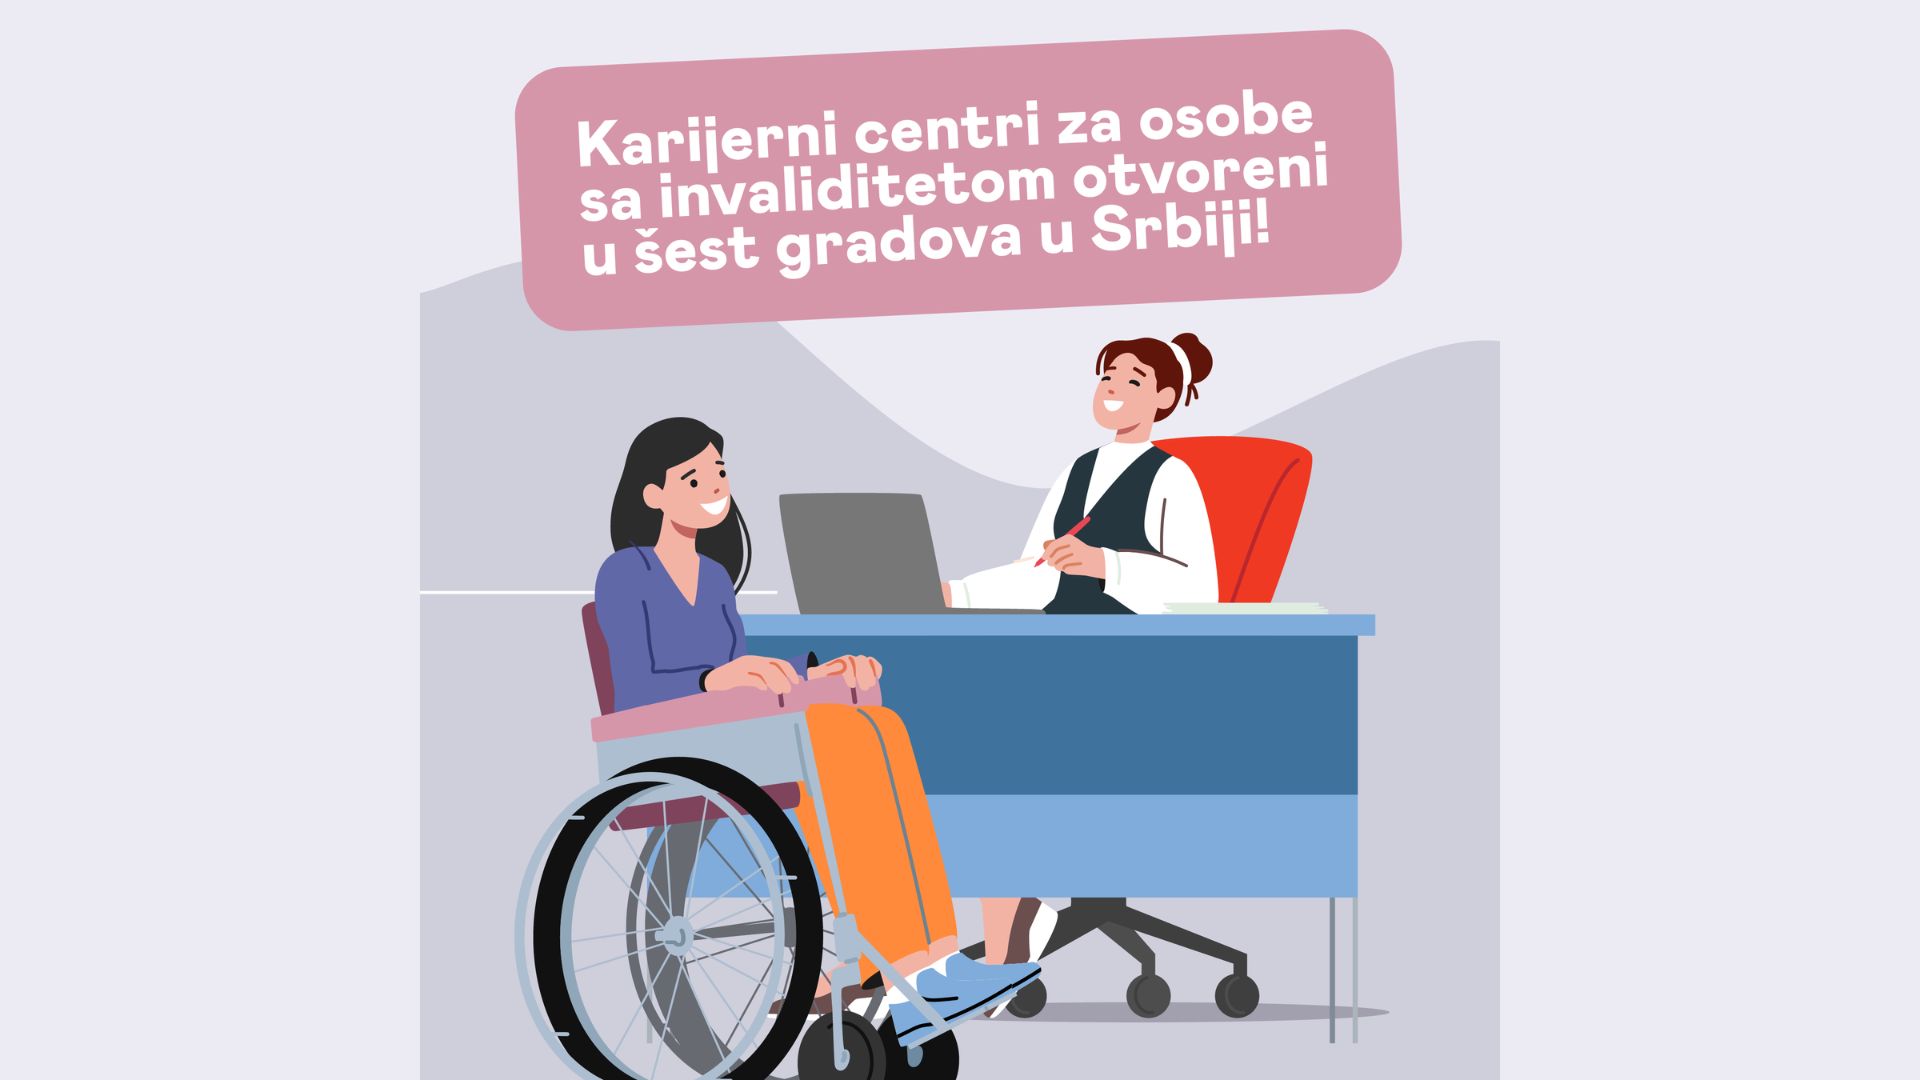 U šest gradova u Srbiji otvoreni karijerni centri za osobe sa invaliditetom